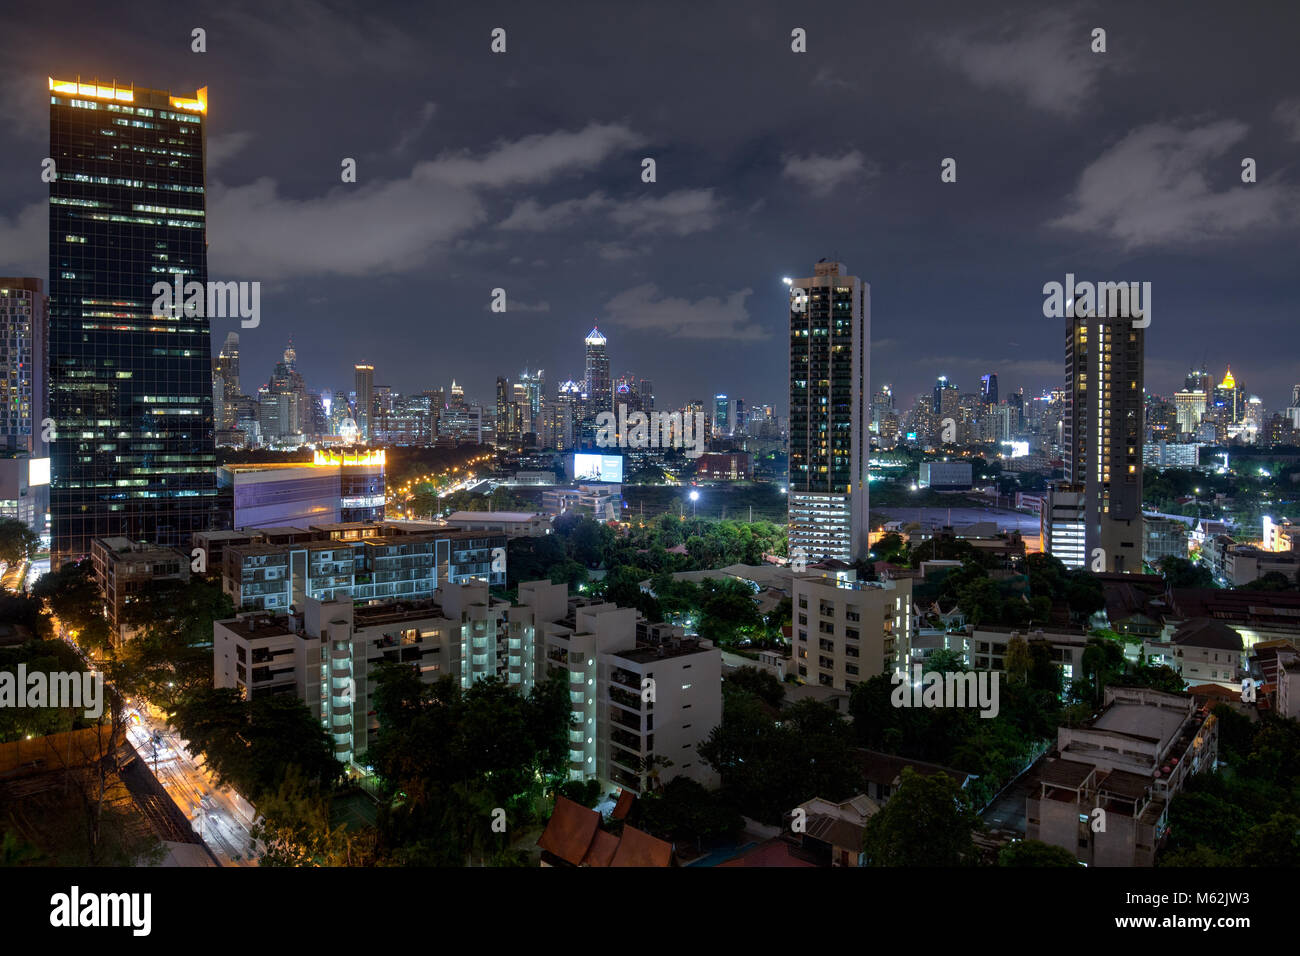 Sathorn district, Bangkok. Stock Photo